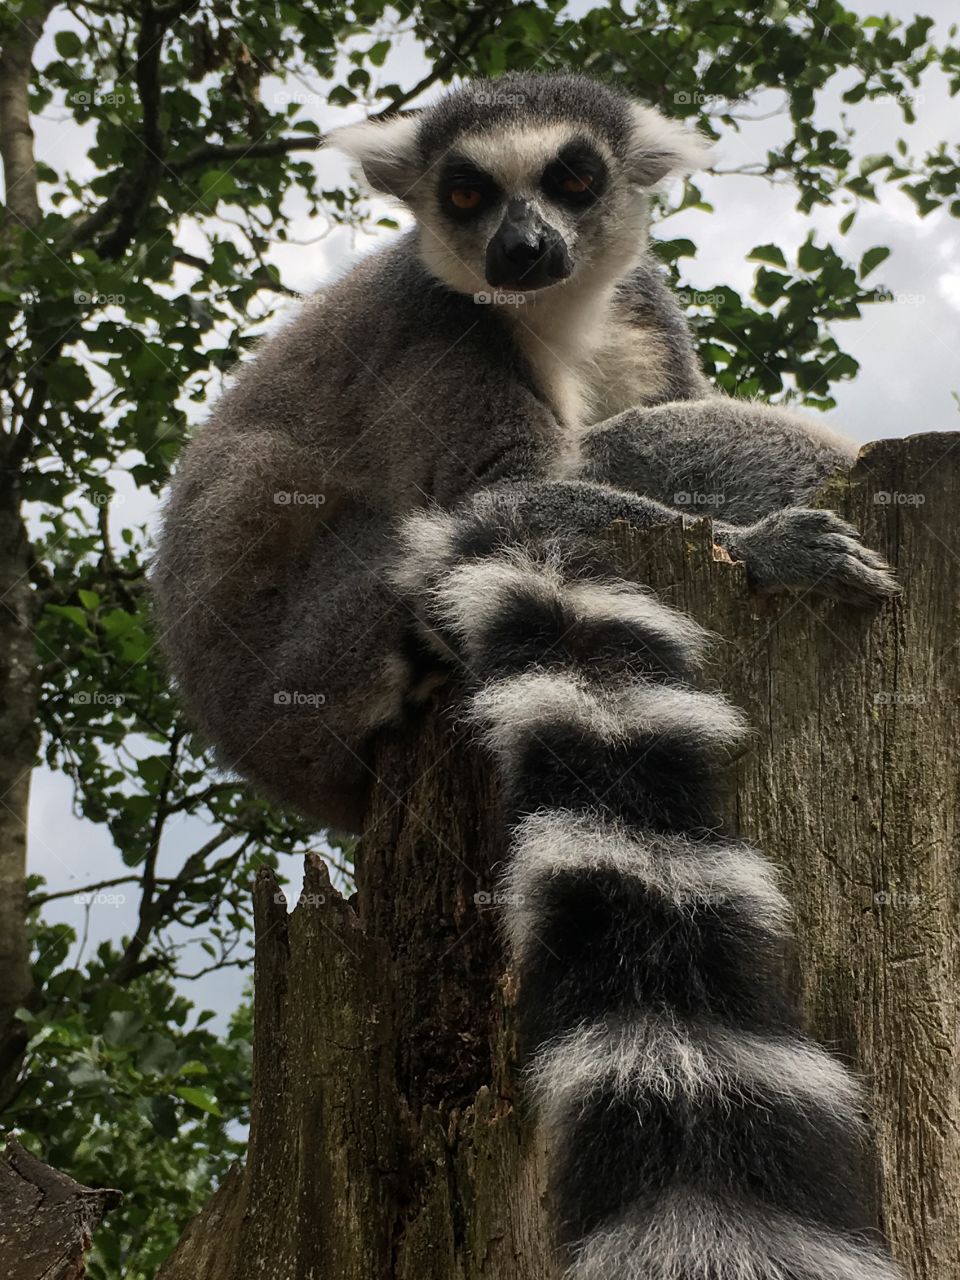 Lemur pose